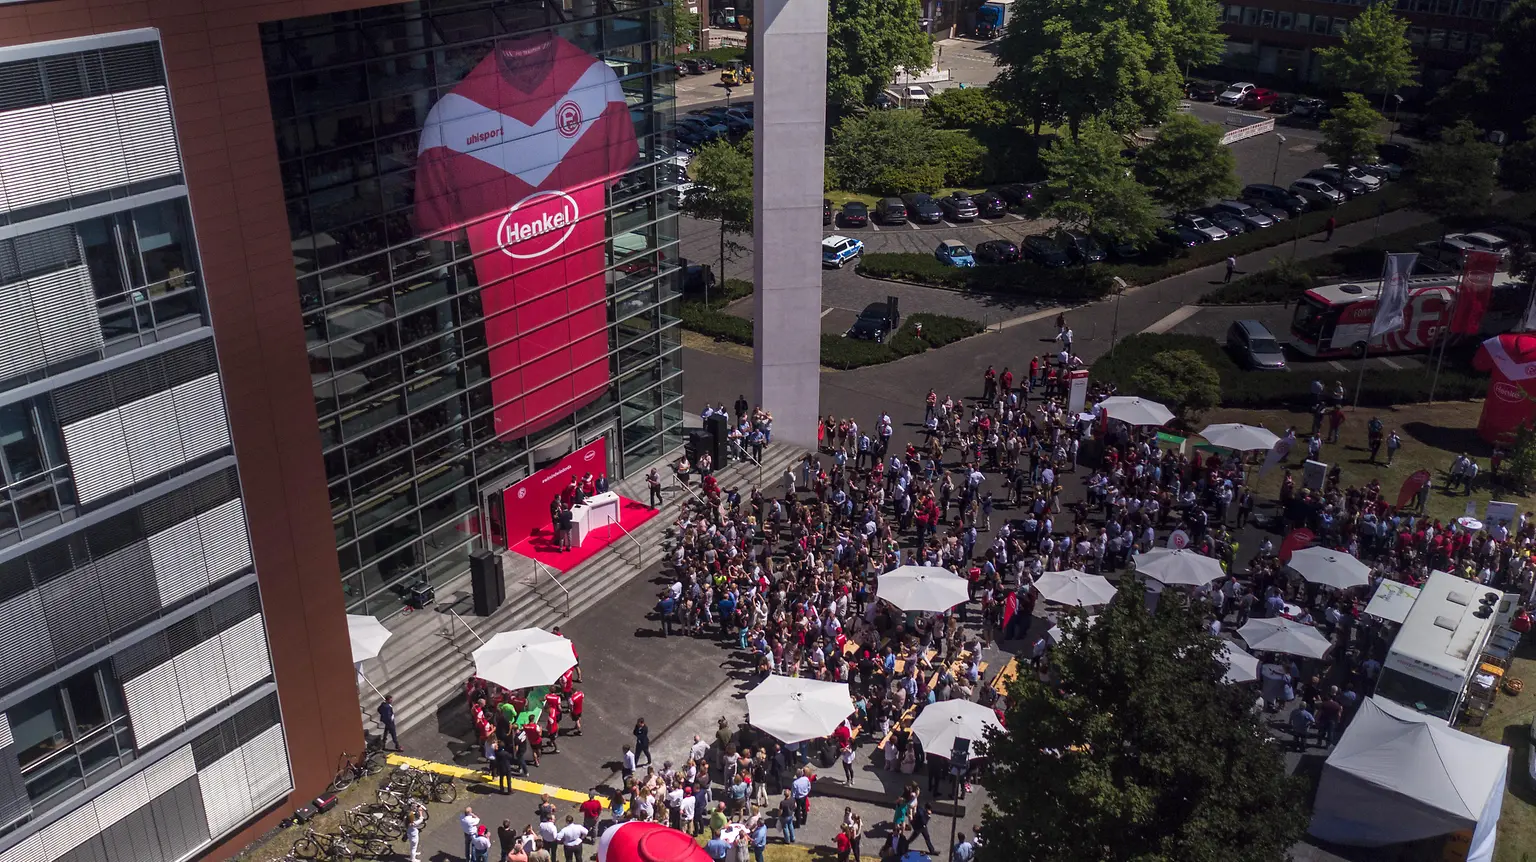 
Unter den rund 5.500 Henkel-Mitarbeitern in Düsseldorf sind auch viele Fortuna-Fans – entsprechend groß war der Andrang beim Besuch der Mannschaft auf dem Werksgelände.